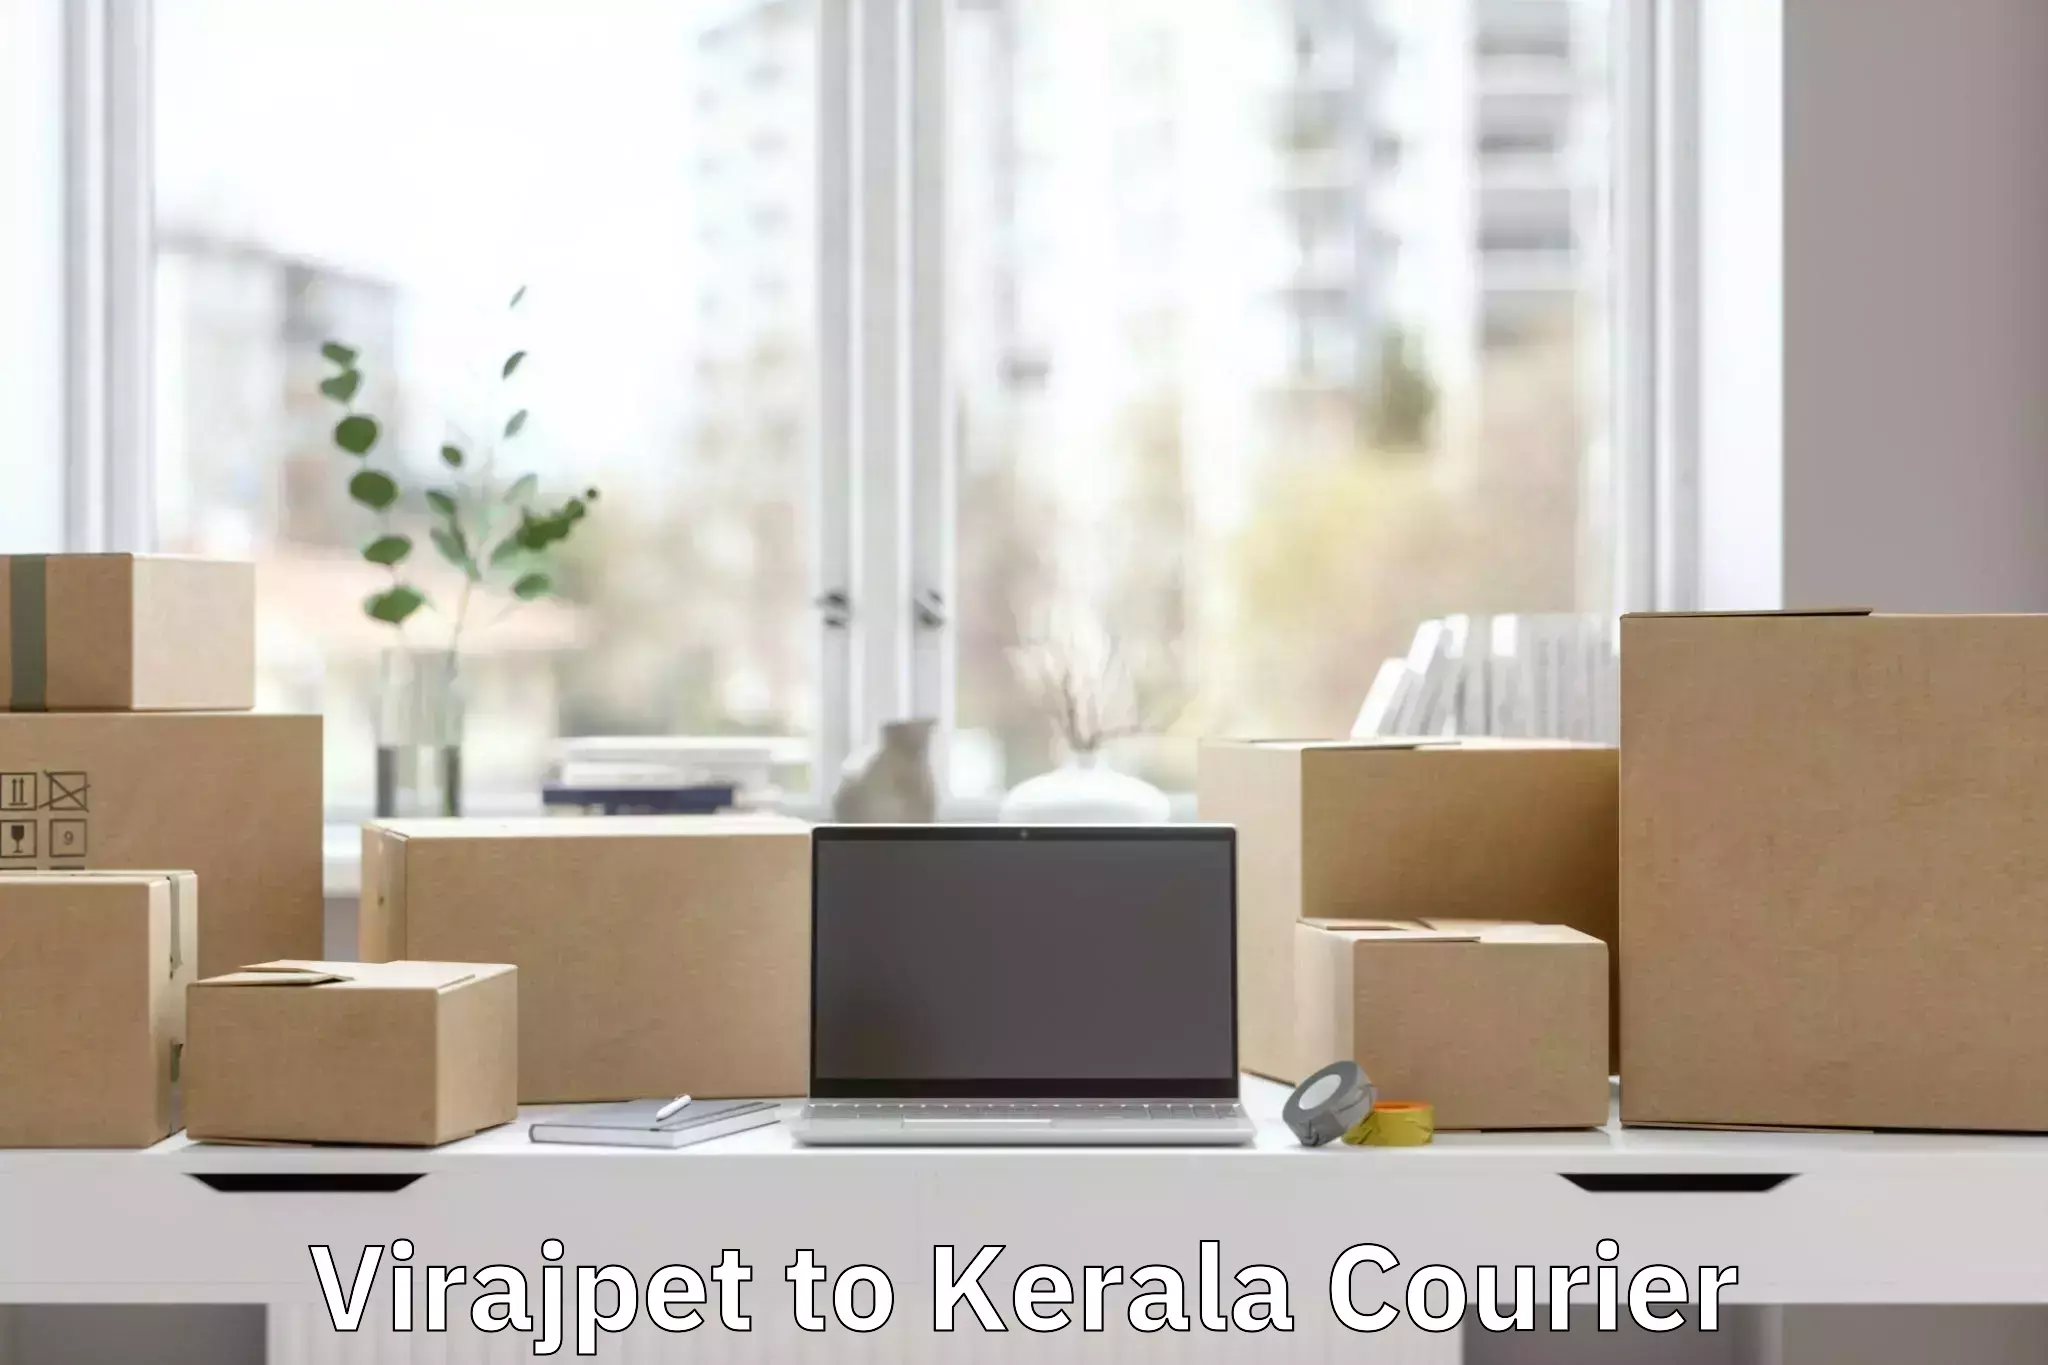 Baggage transport management Virajpet to Kerala